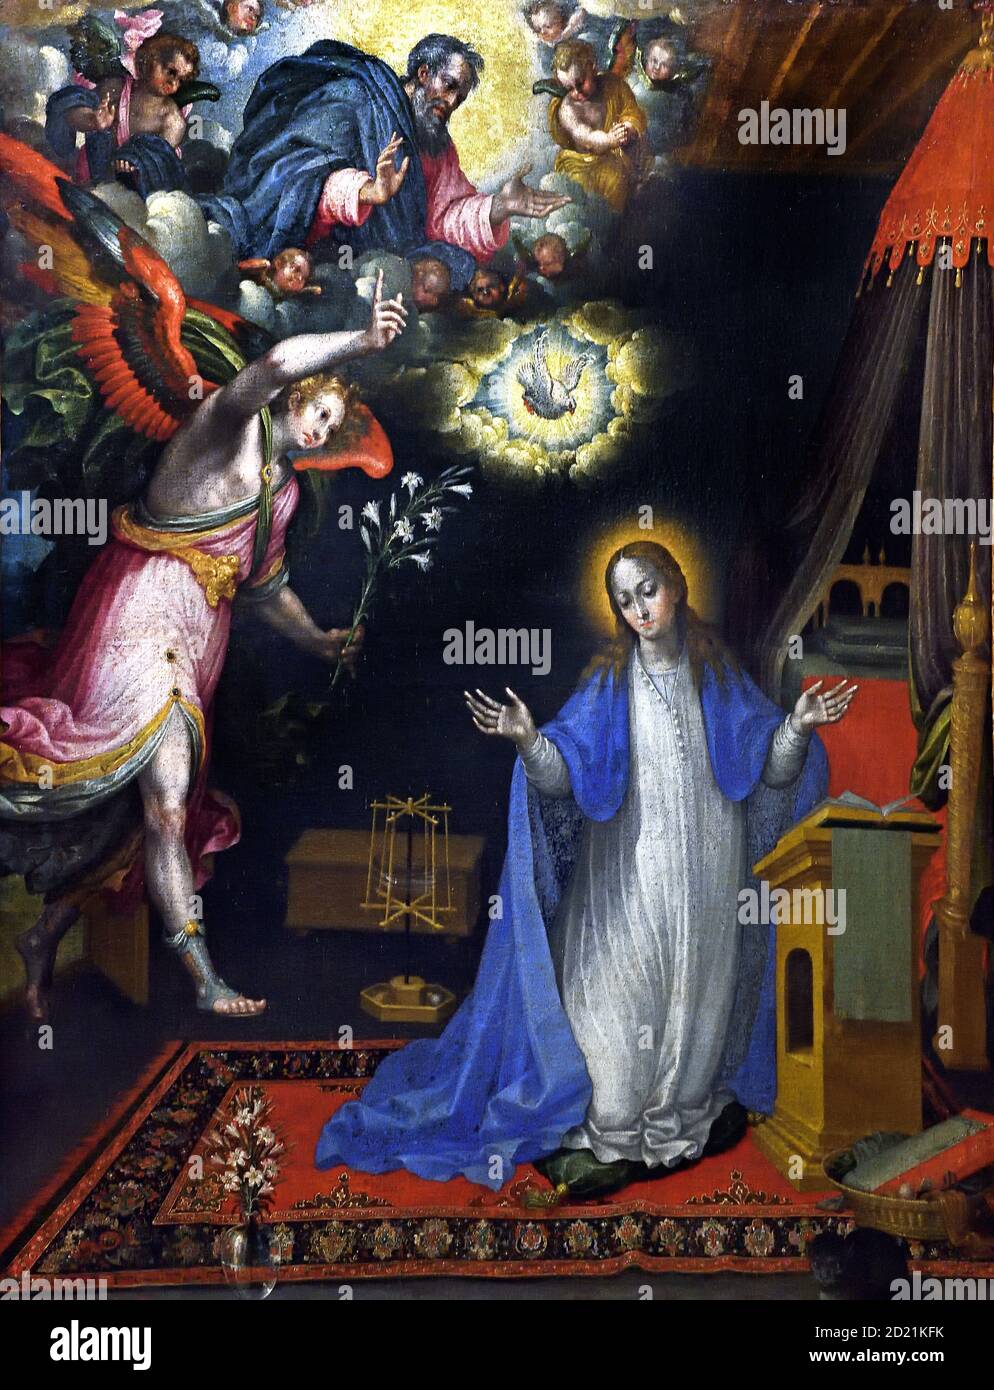 L'Annonciation 1609-1643 López de Herrera, Alonso Marie, s'agenouillant au milieu d'une salle, reçoit la nouvelle qu'elle va donner naissance à un enfant qu'elle nommera Jésus. Le porteur de la bonne nouvelle est l'archange Saint Gabriel. Espagne, espagnol, Banque D'Images